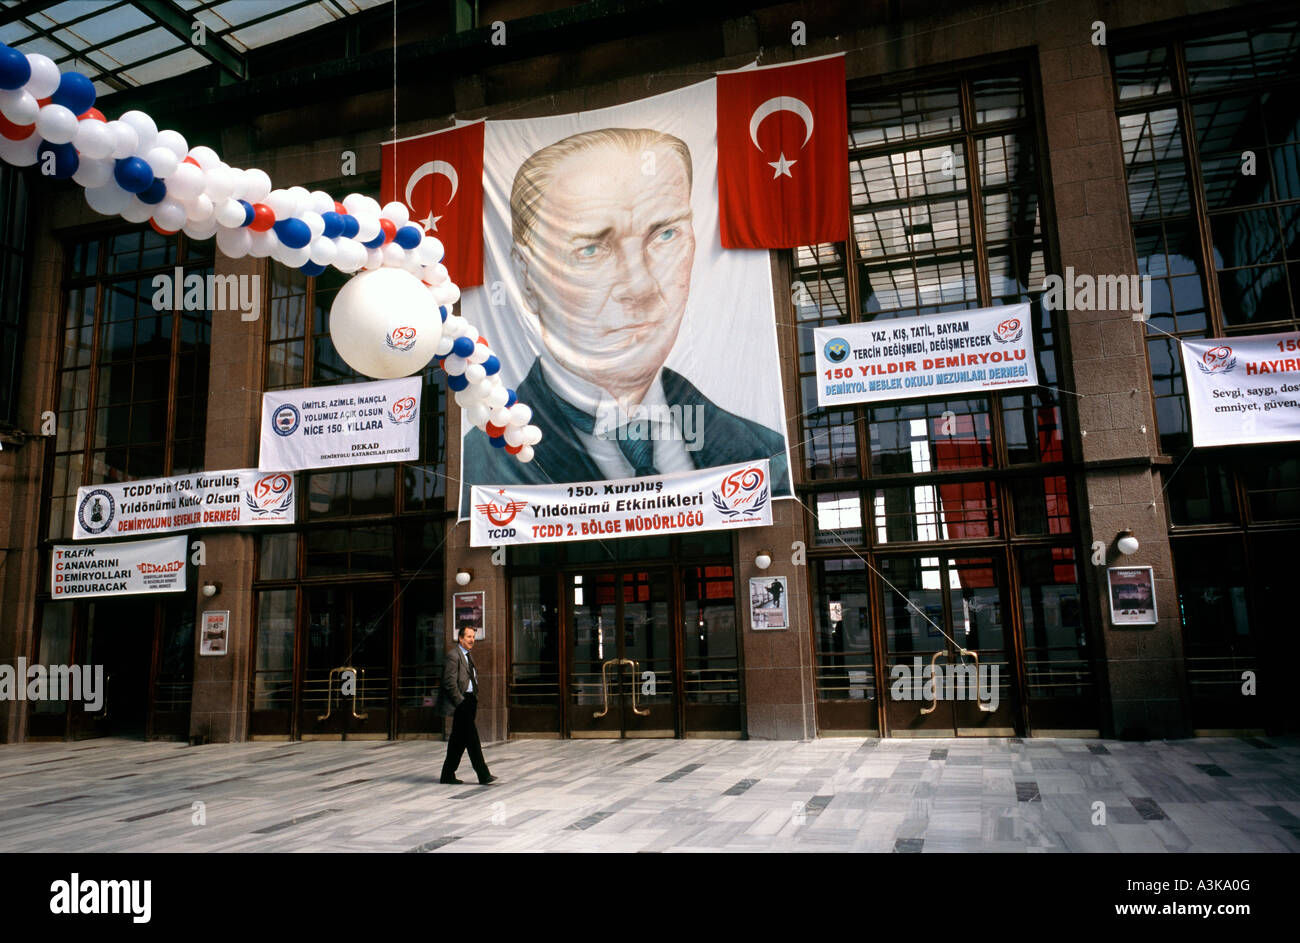 28 mars 2006 - bannières de fête pour les 150 ans de chemins de fer turcs à Ankara Gar (gare centrale). Banque D'Images